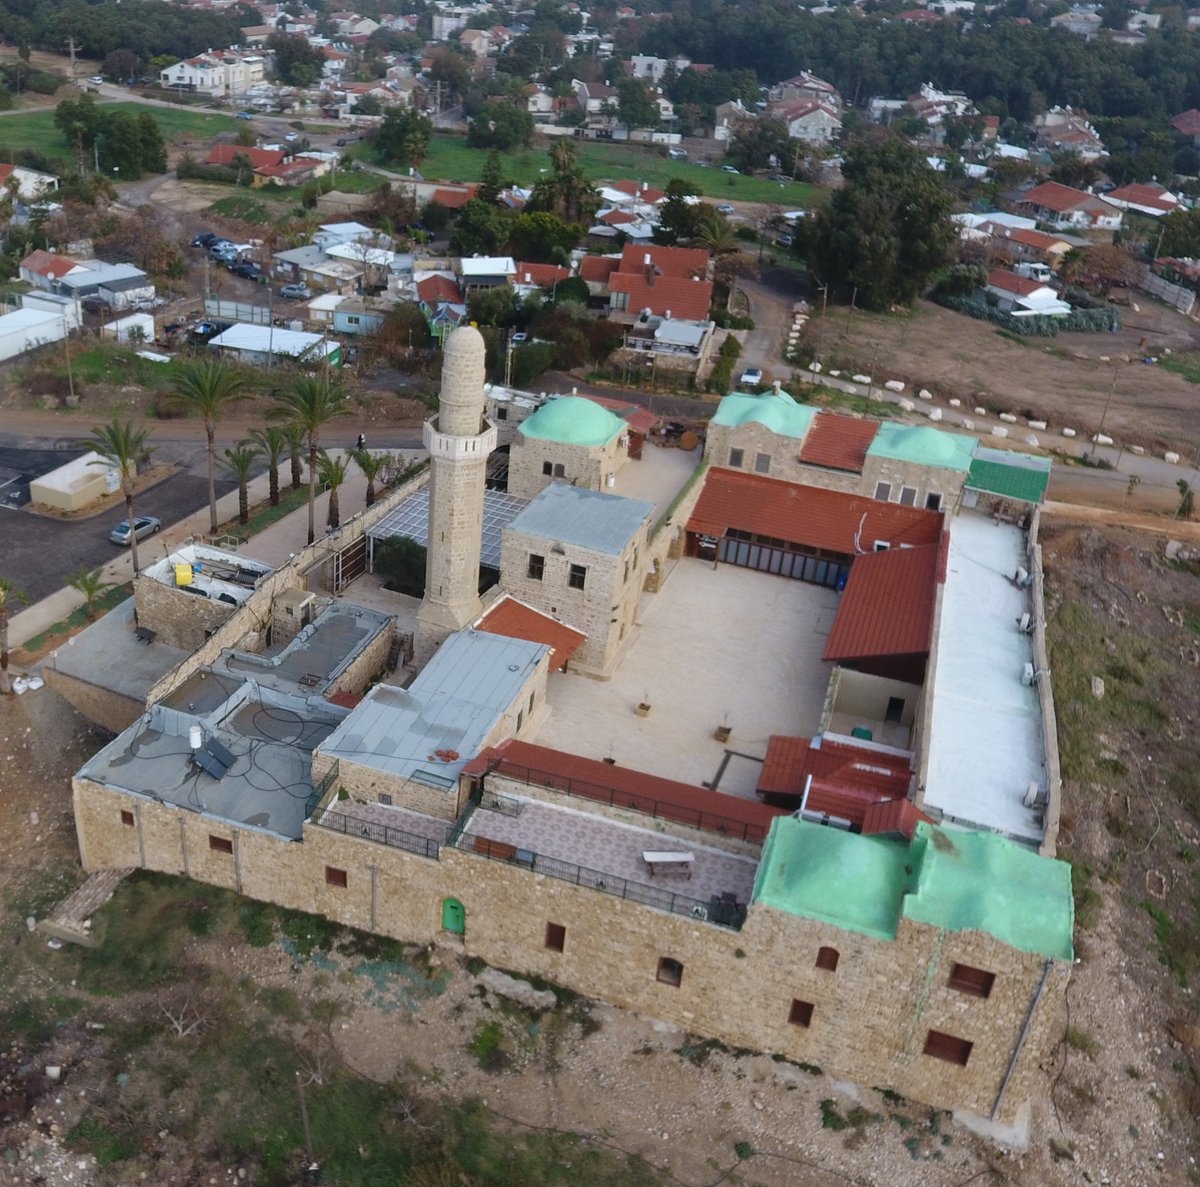 مسجد سيدنا علي في مدينة هرتسليا الإسرائيلية هو واحد من بين أكثر من 400 مسجد في إسرائيل. 
جمعة مباركة…